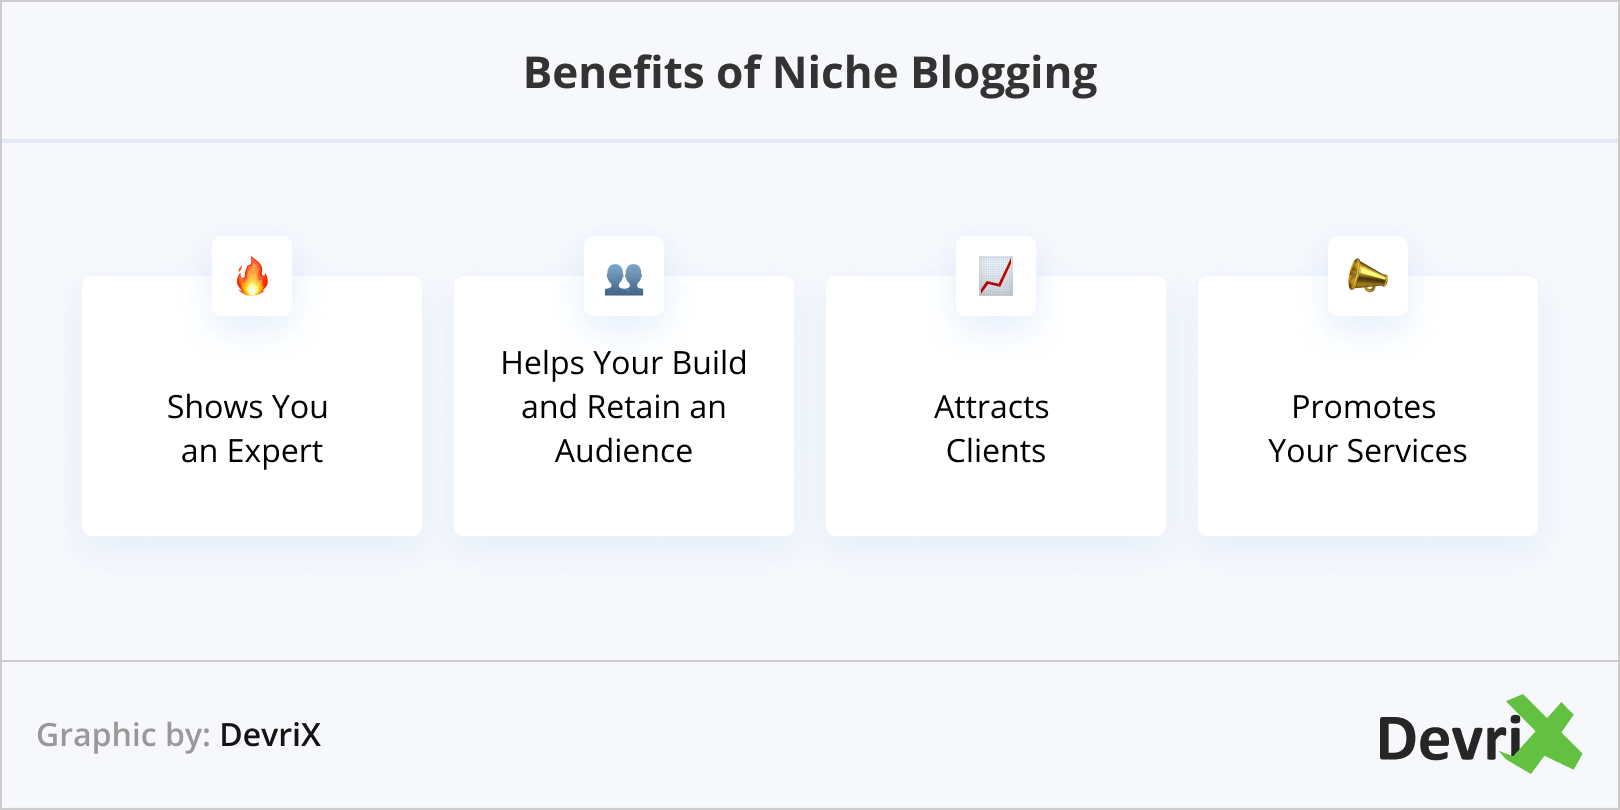 Benefits of Niche Blogging